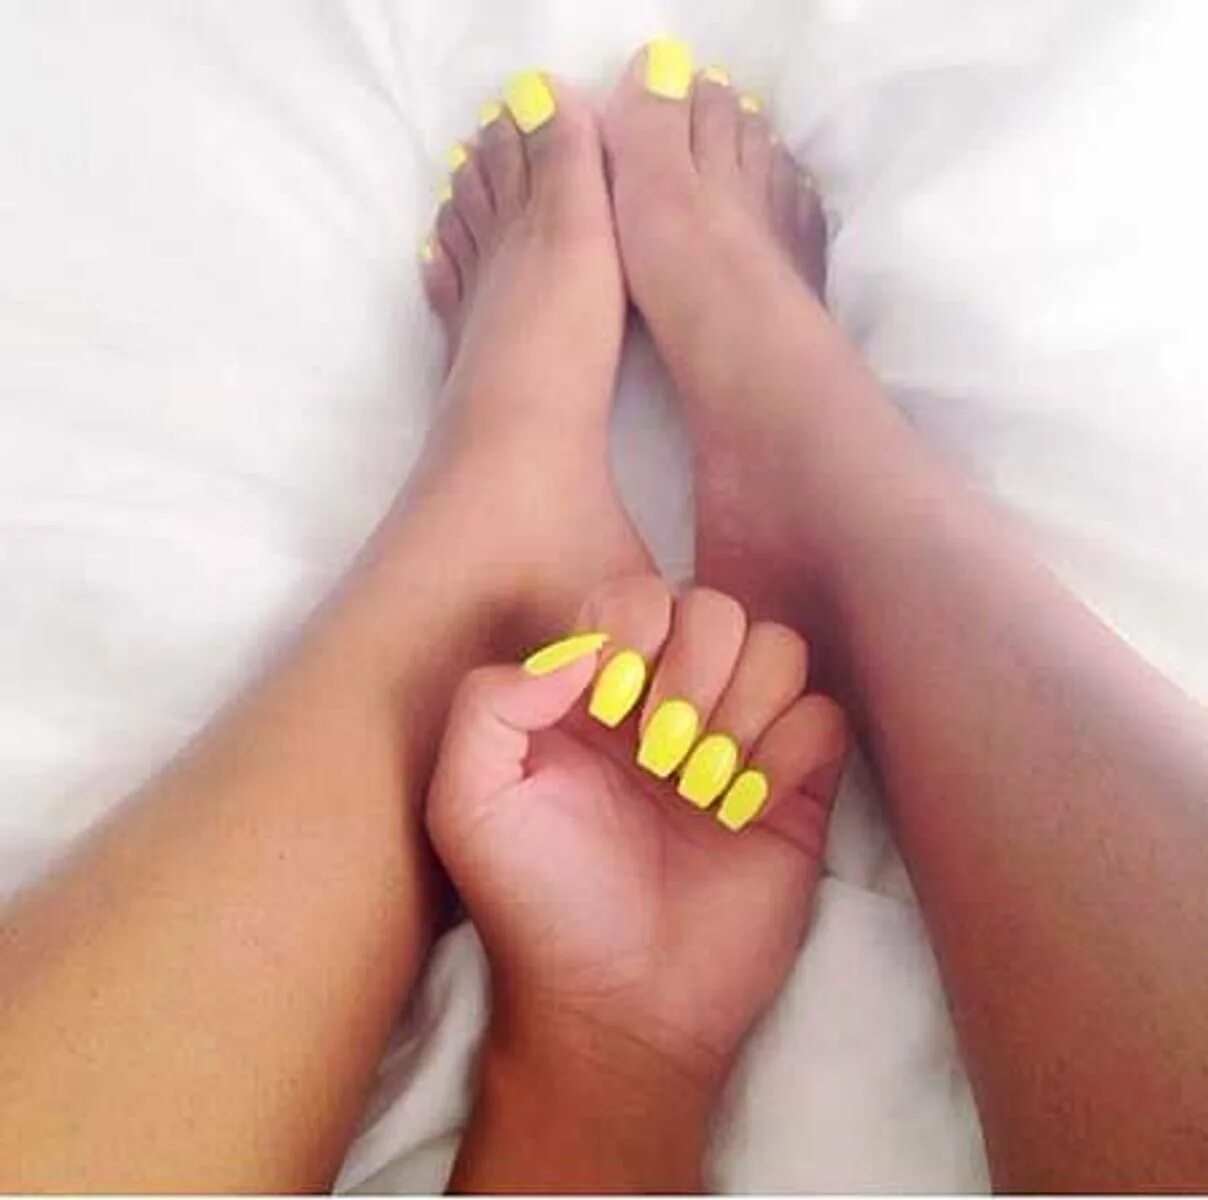 Желтые стопы. Ногти на ногах желтого цвета. Маникюр и педикюр желтого цвета. Маникюр педикюр жёлтый неон. Неоново-желтый маникюр, педикюр.